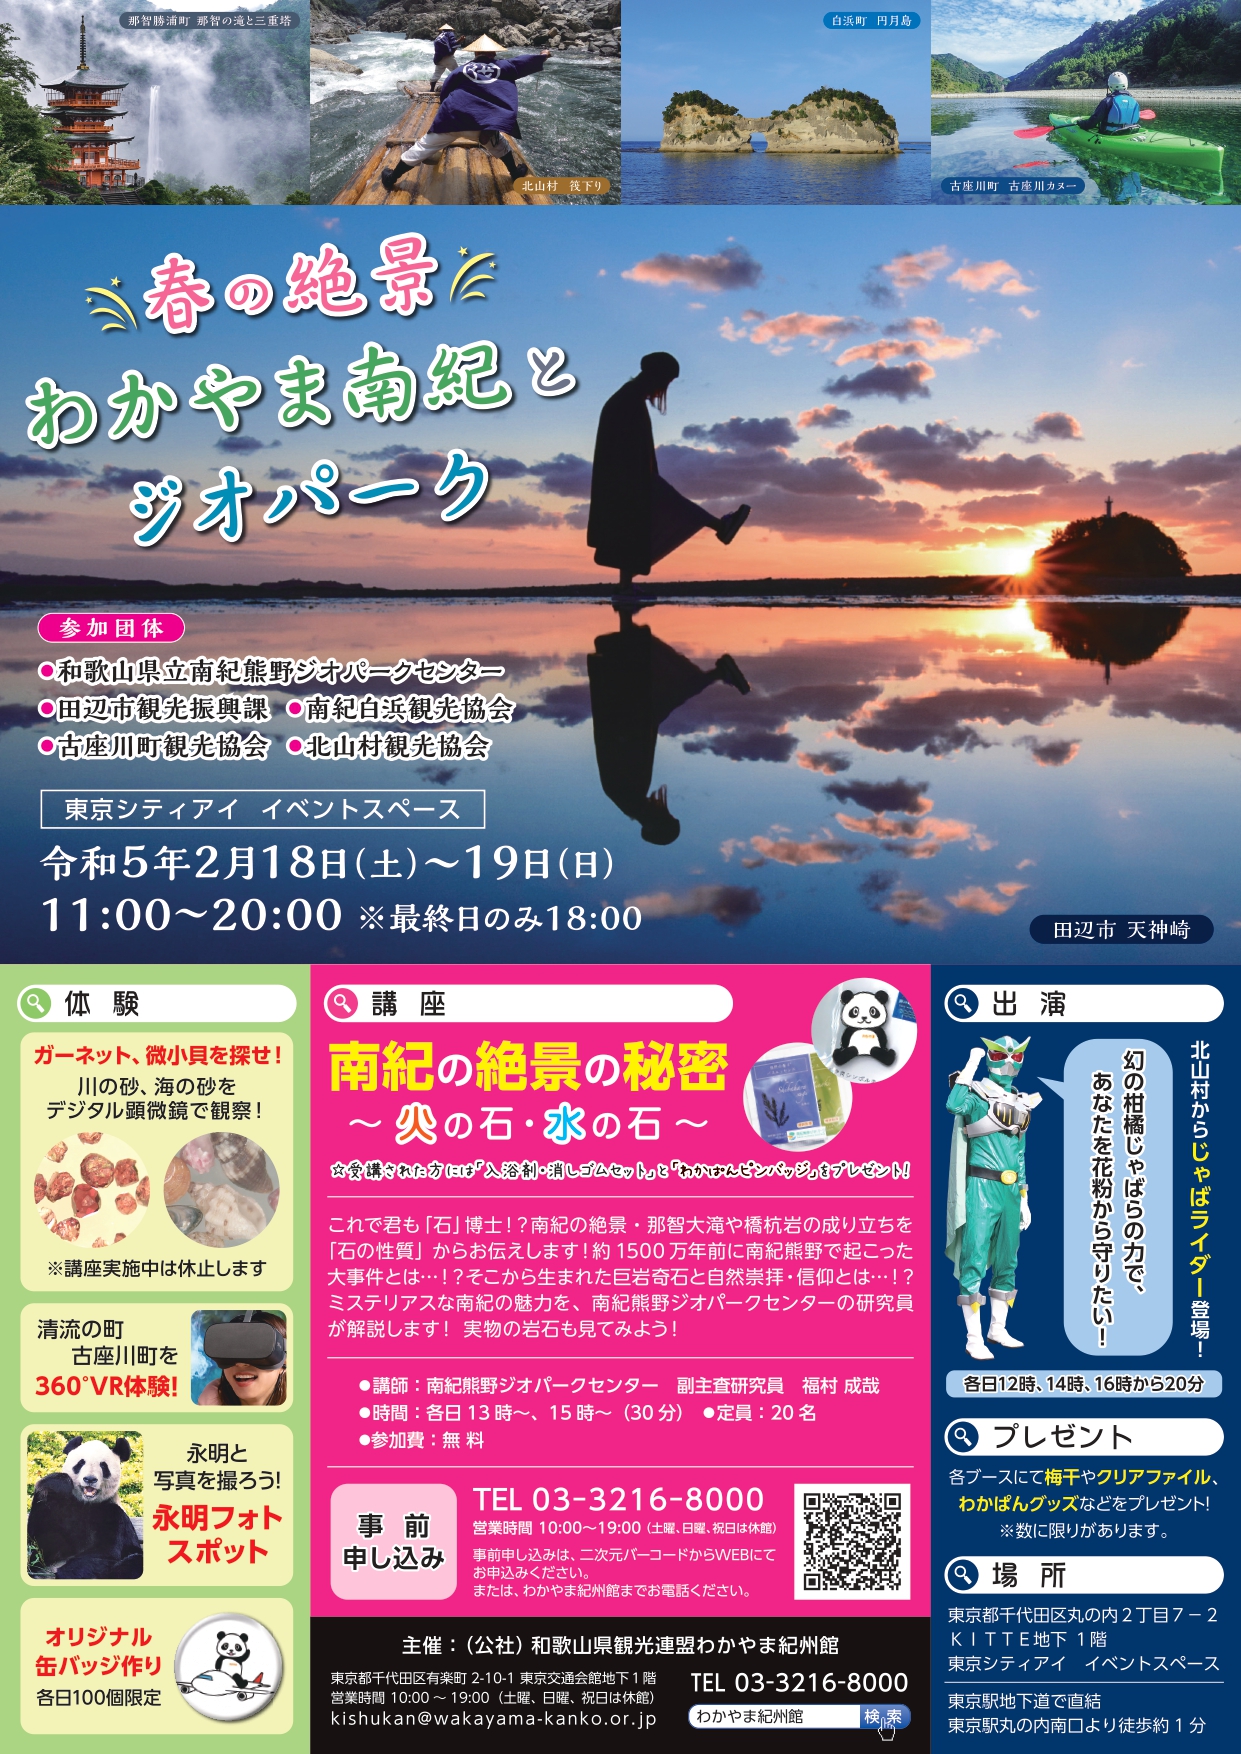 【東京イベント】春の絶景・わかやま南紀とジオパーク